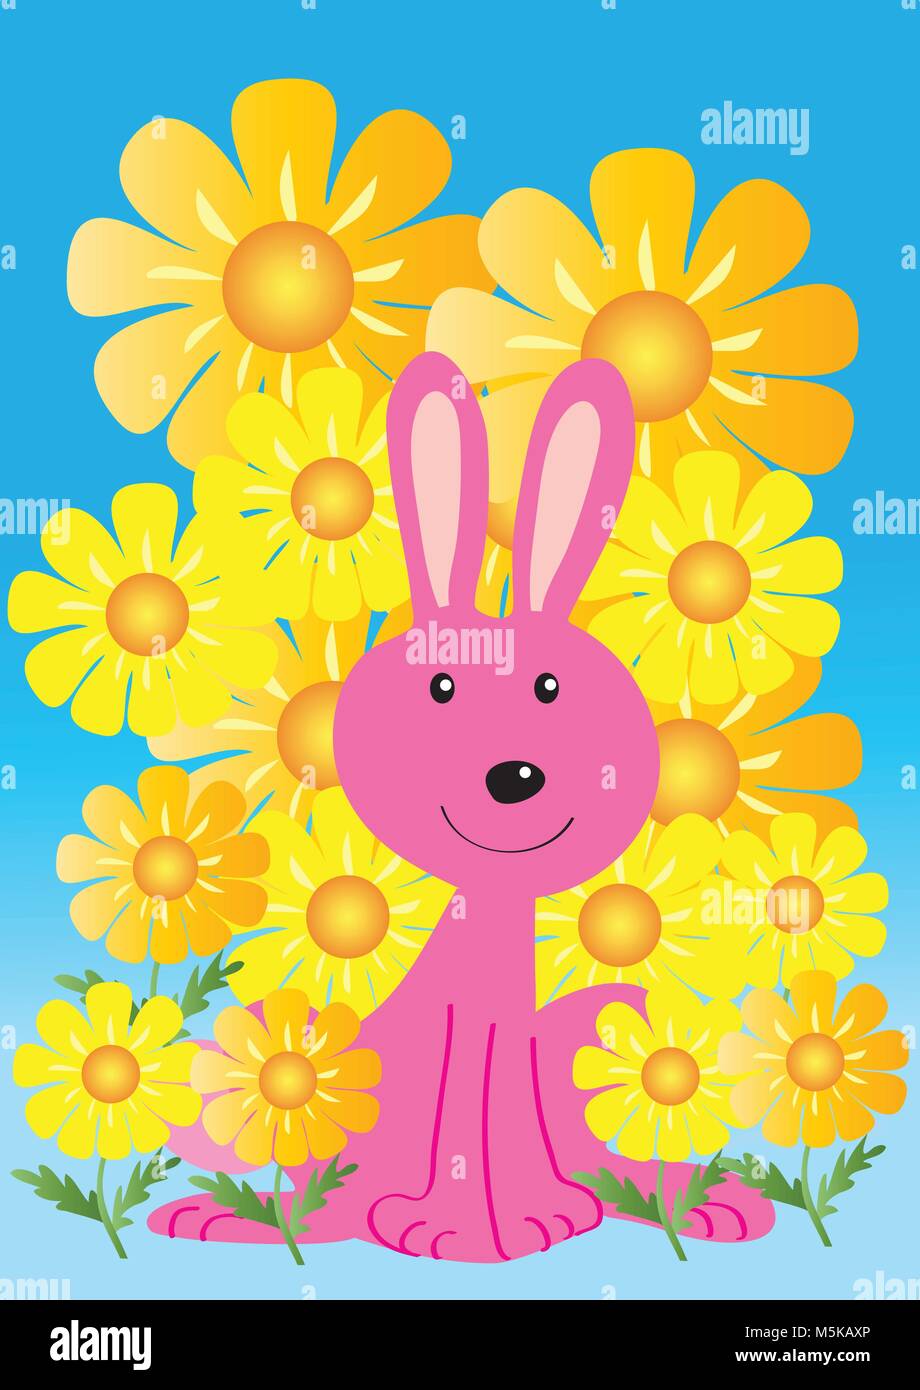 Ein Cartoon pink bunny Kaninchen mit goldgelben Daisy Flowers Stock Vektor